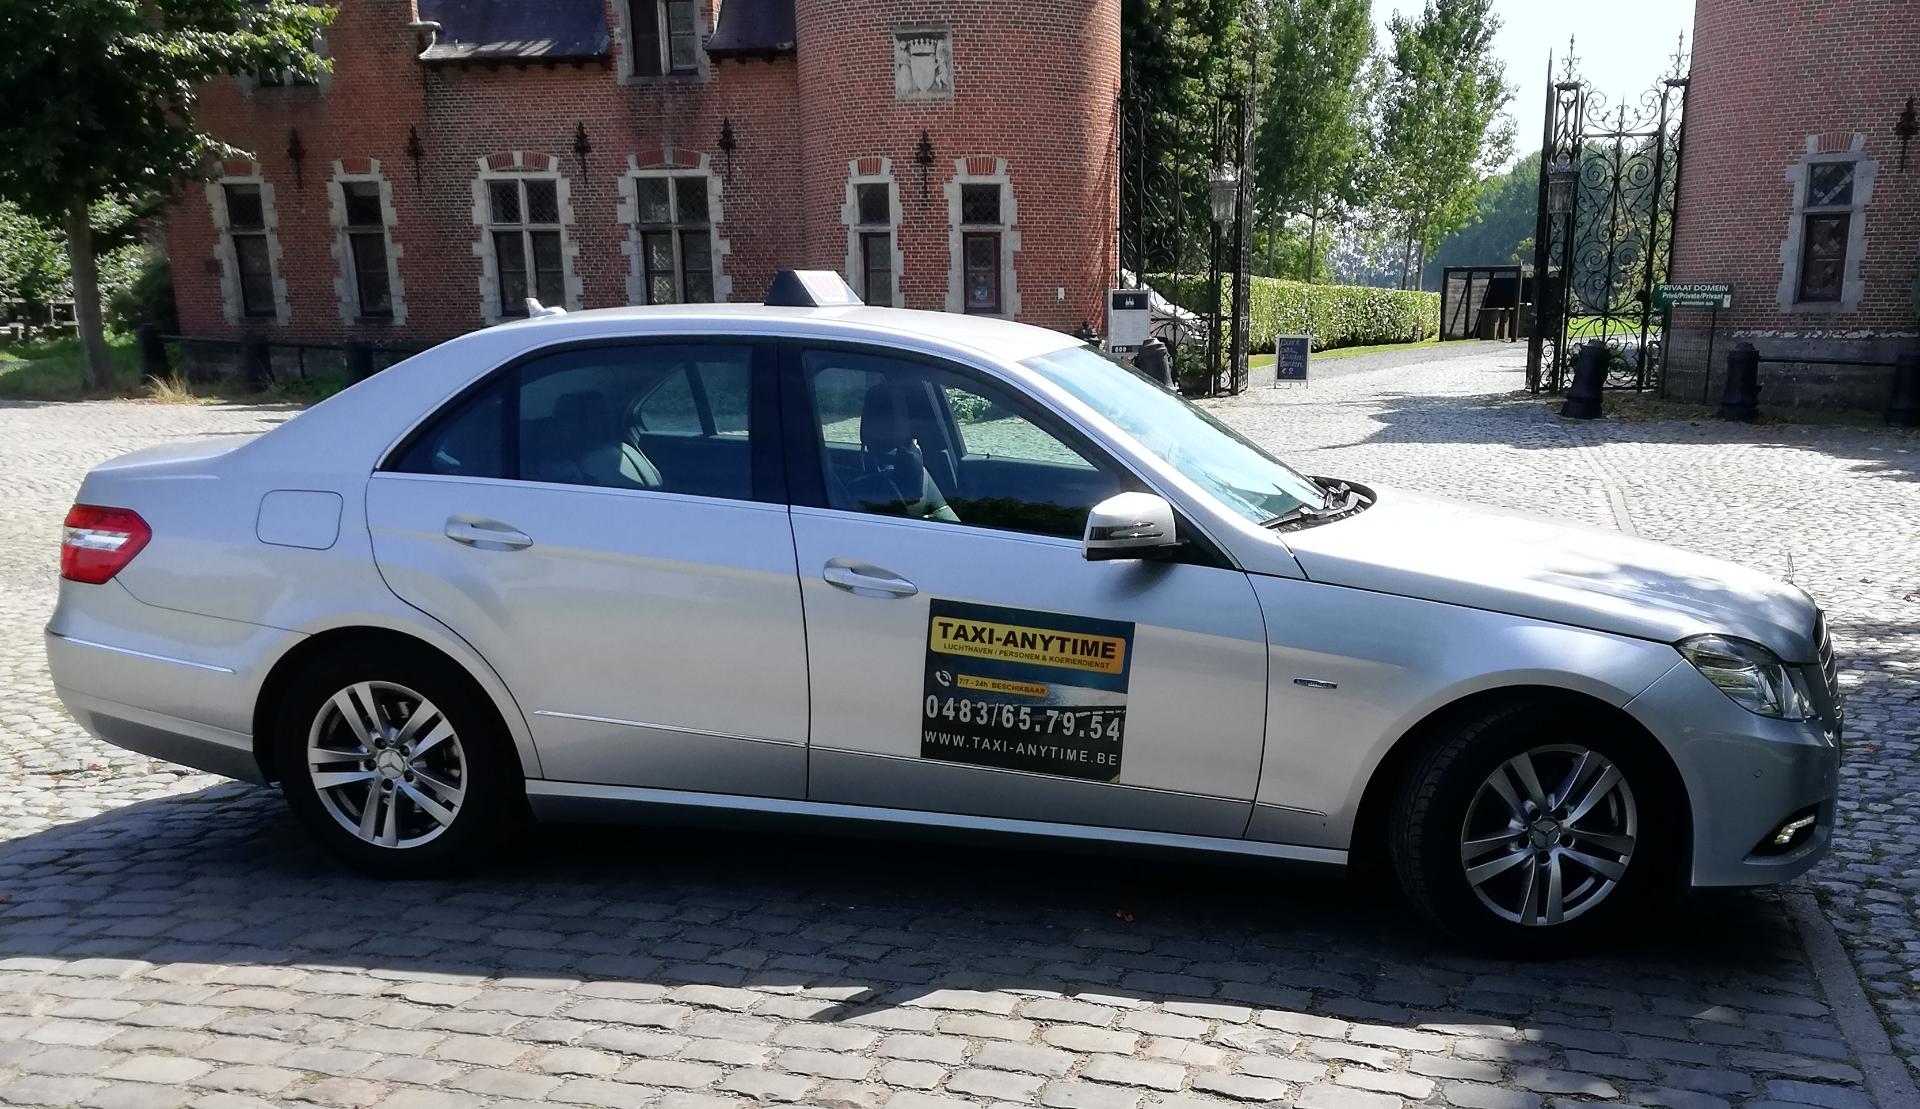 bestelwagenverhuurders Sint-Stevens-Woluwe Taxi-Anytime